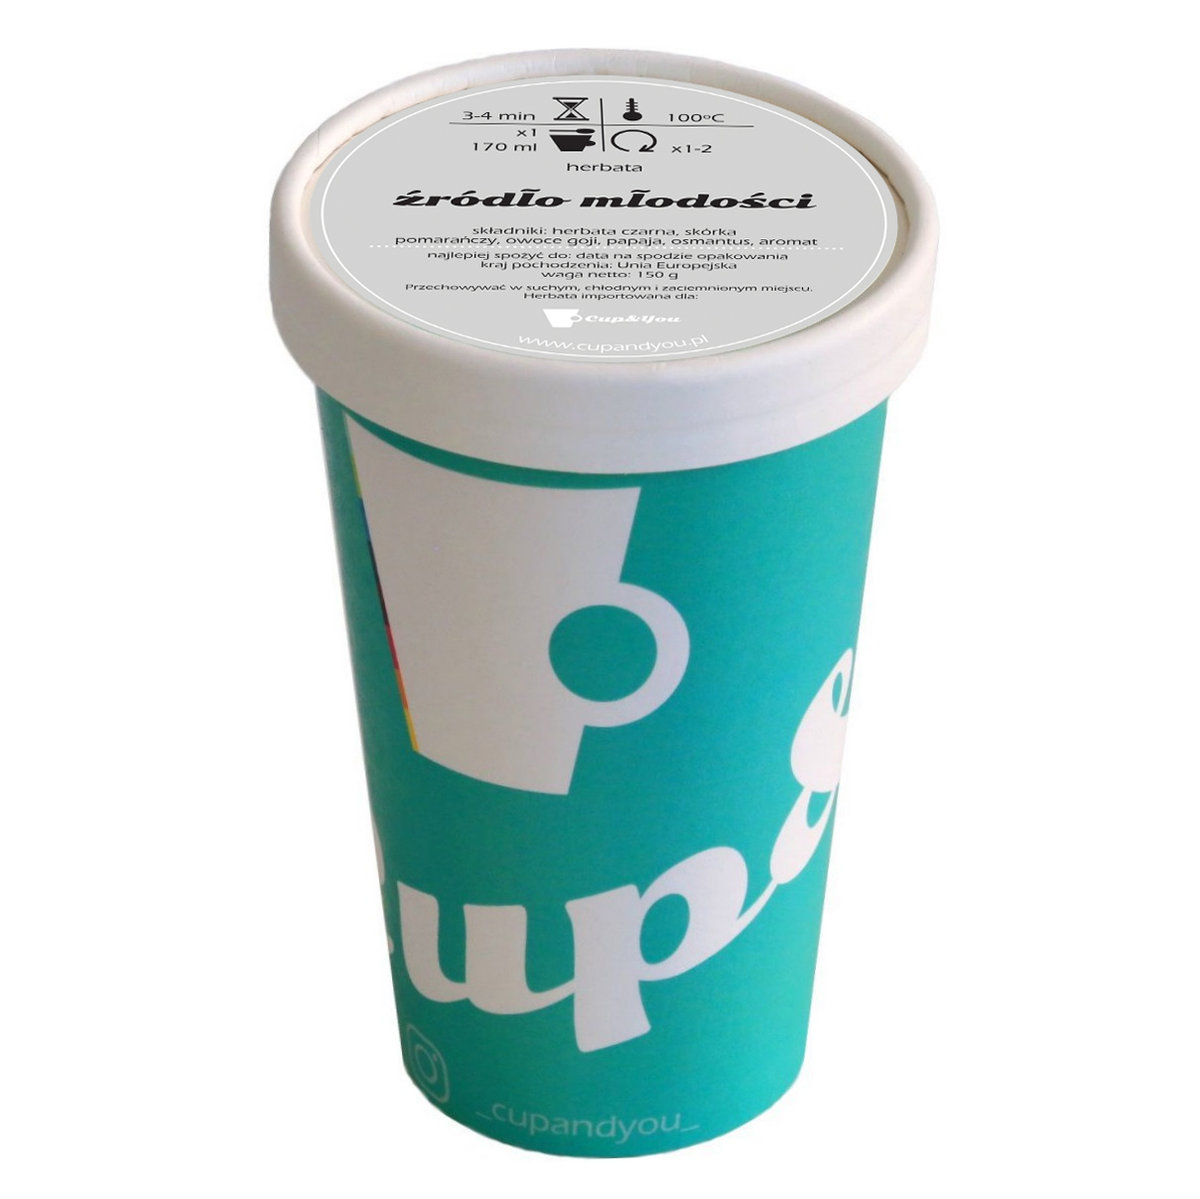 Herbata czarna smakowa CUP&YOU, źródło młodości w EKO KUBKU, 150 g